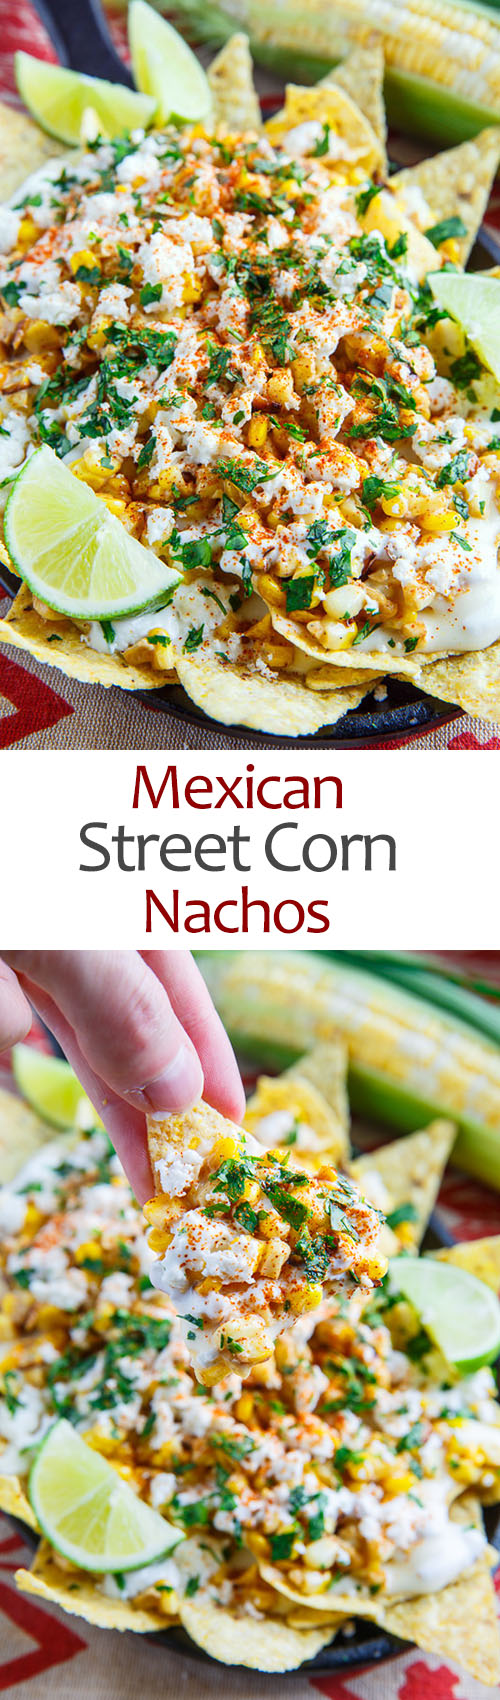 Mexican Street Corn Nachos